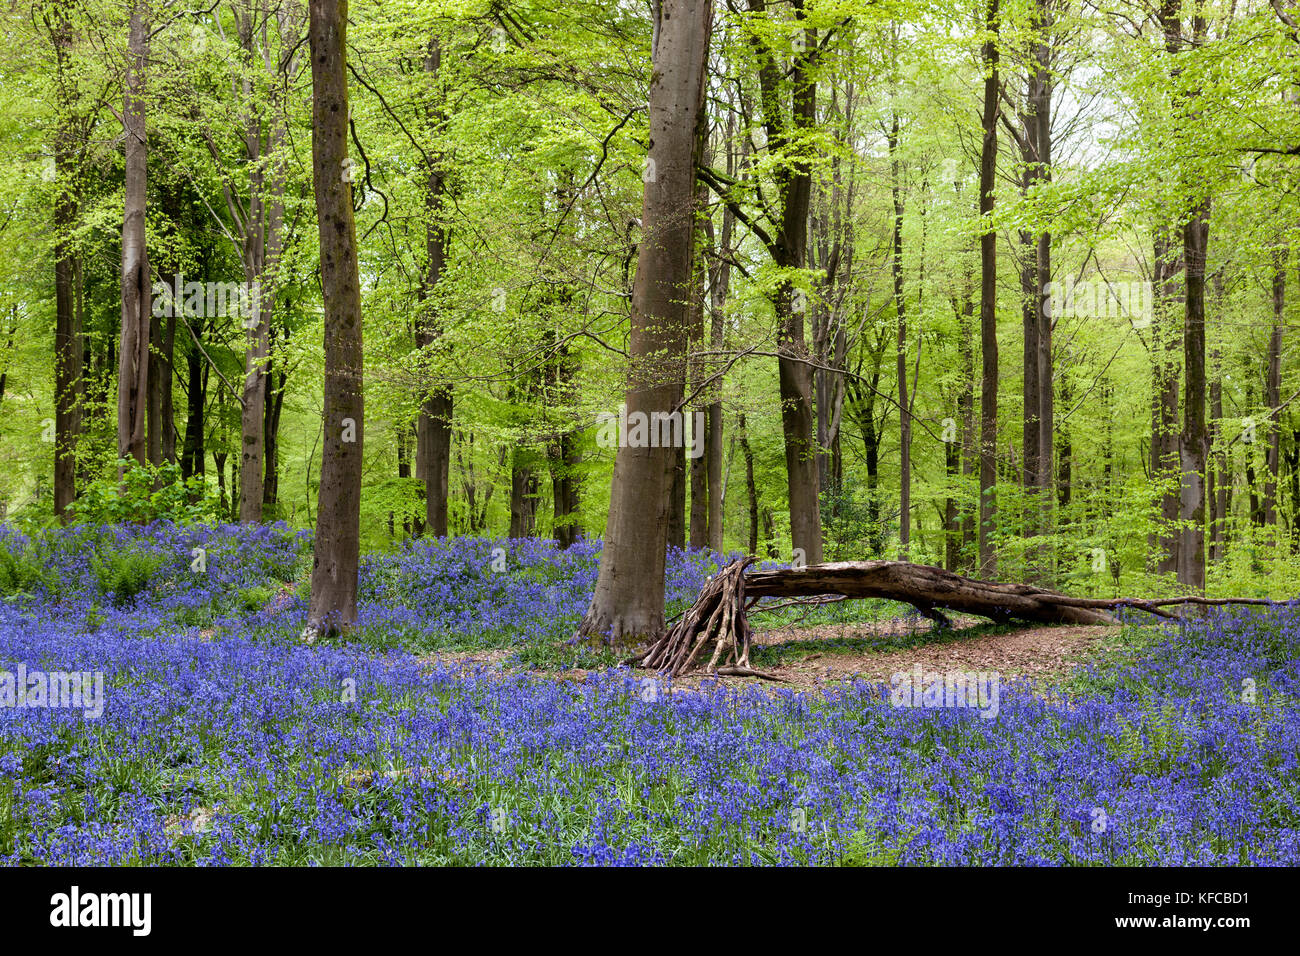 Bleuets (jacinthoides non-scripta) fleurissent au printemps dans West Woods bluebell Wood, Lockeridge, Wiltshire, Angleterre, Royaume-Uni Banque D'Images